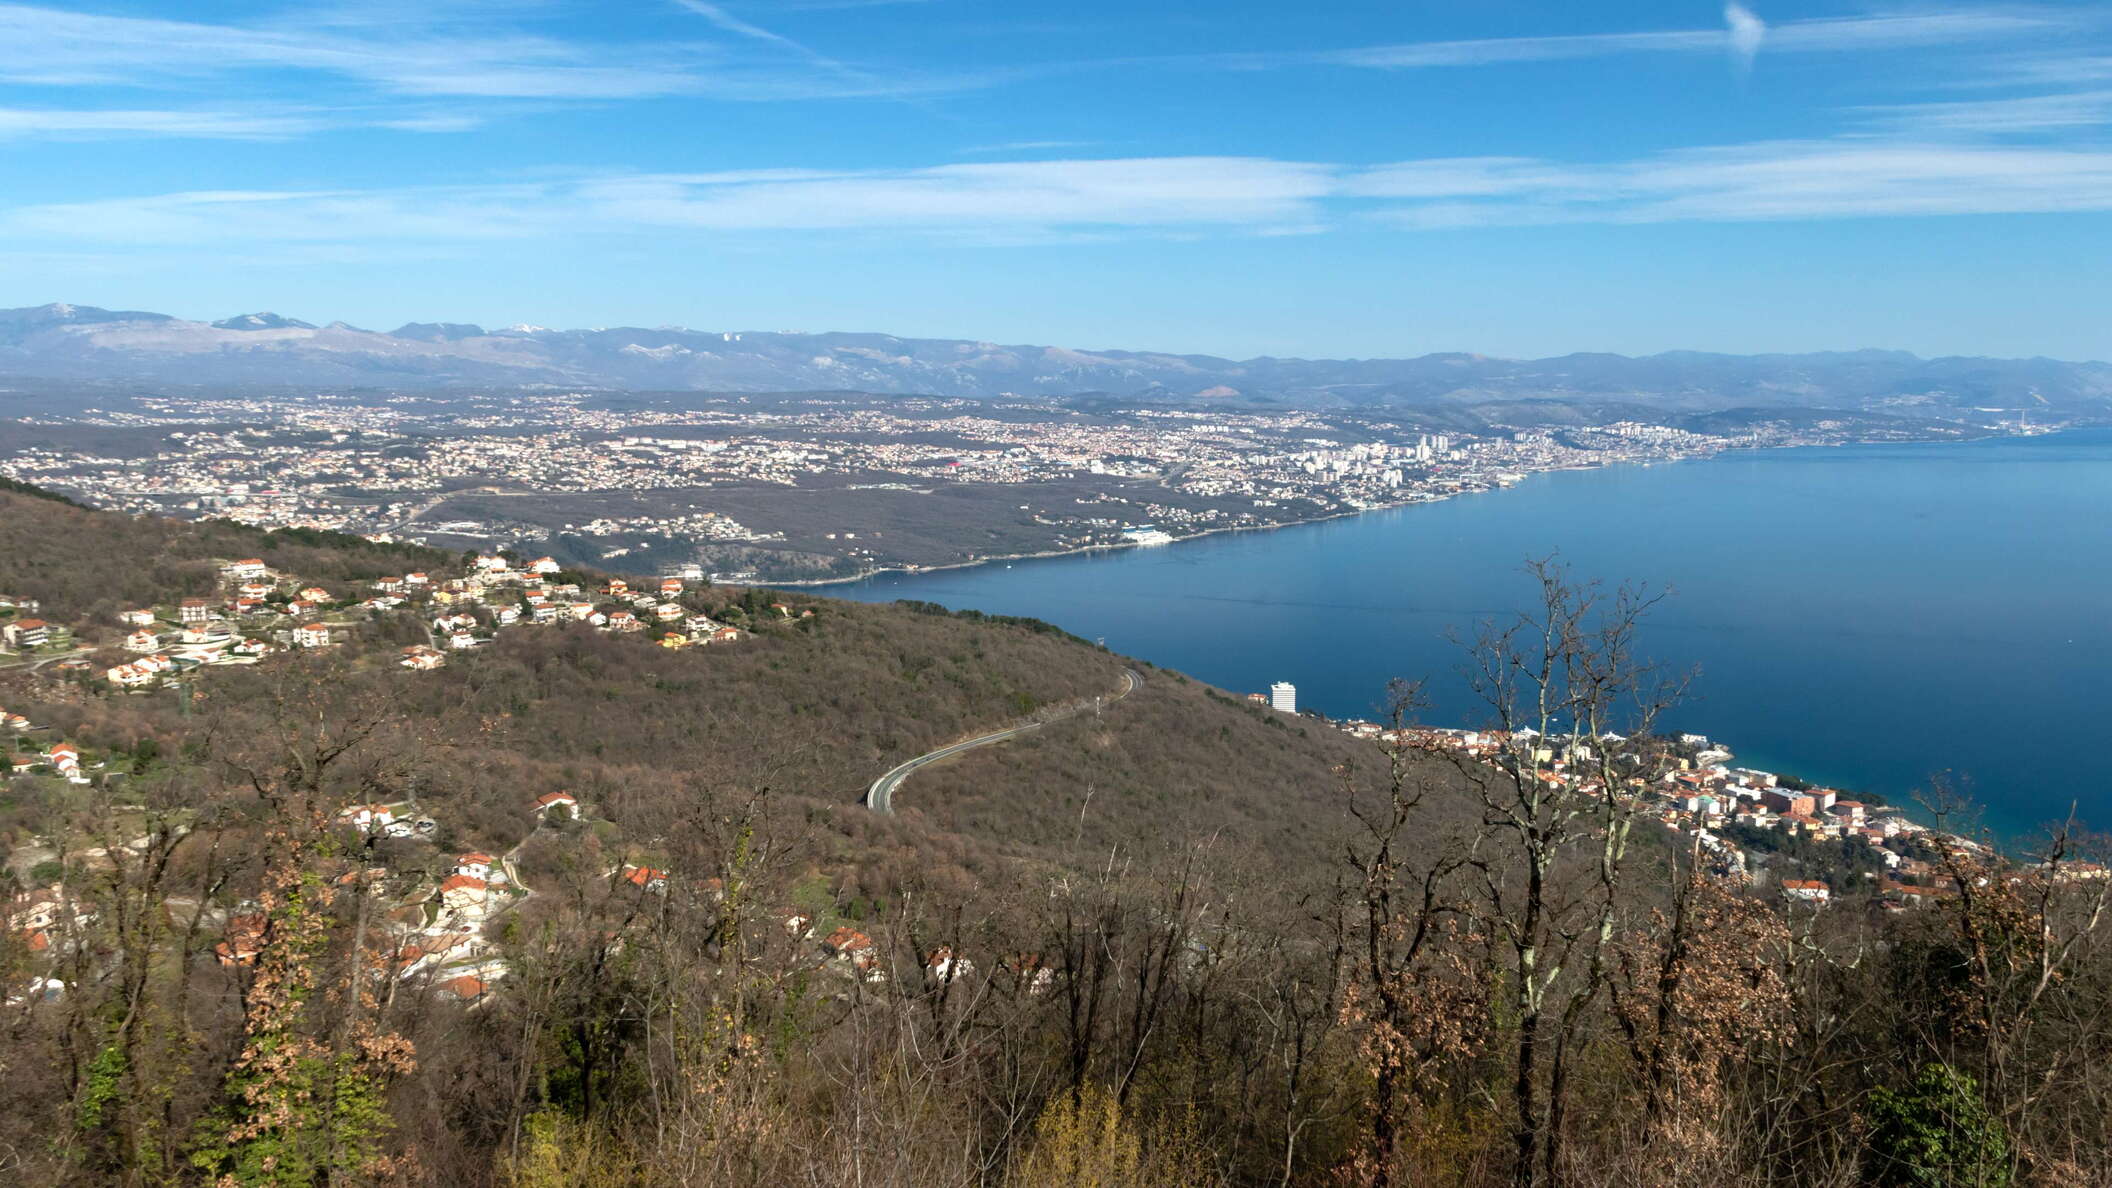 Kvarner Gulf with Opatija and Rijeka